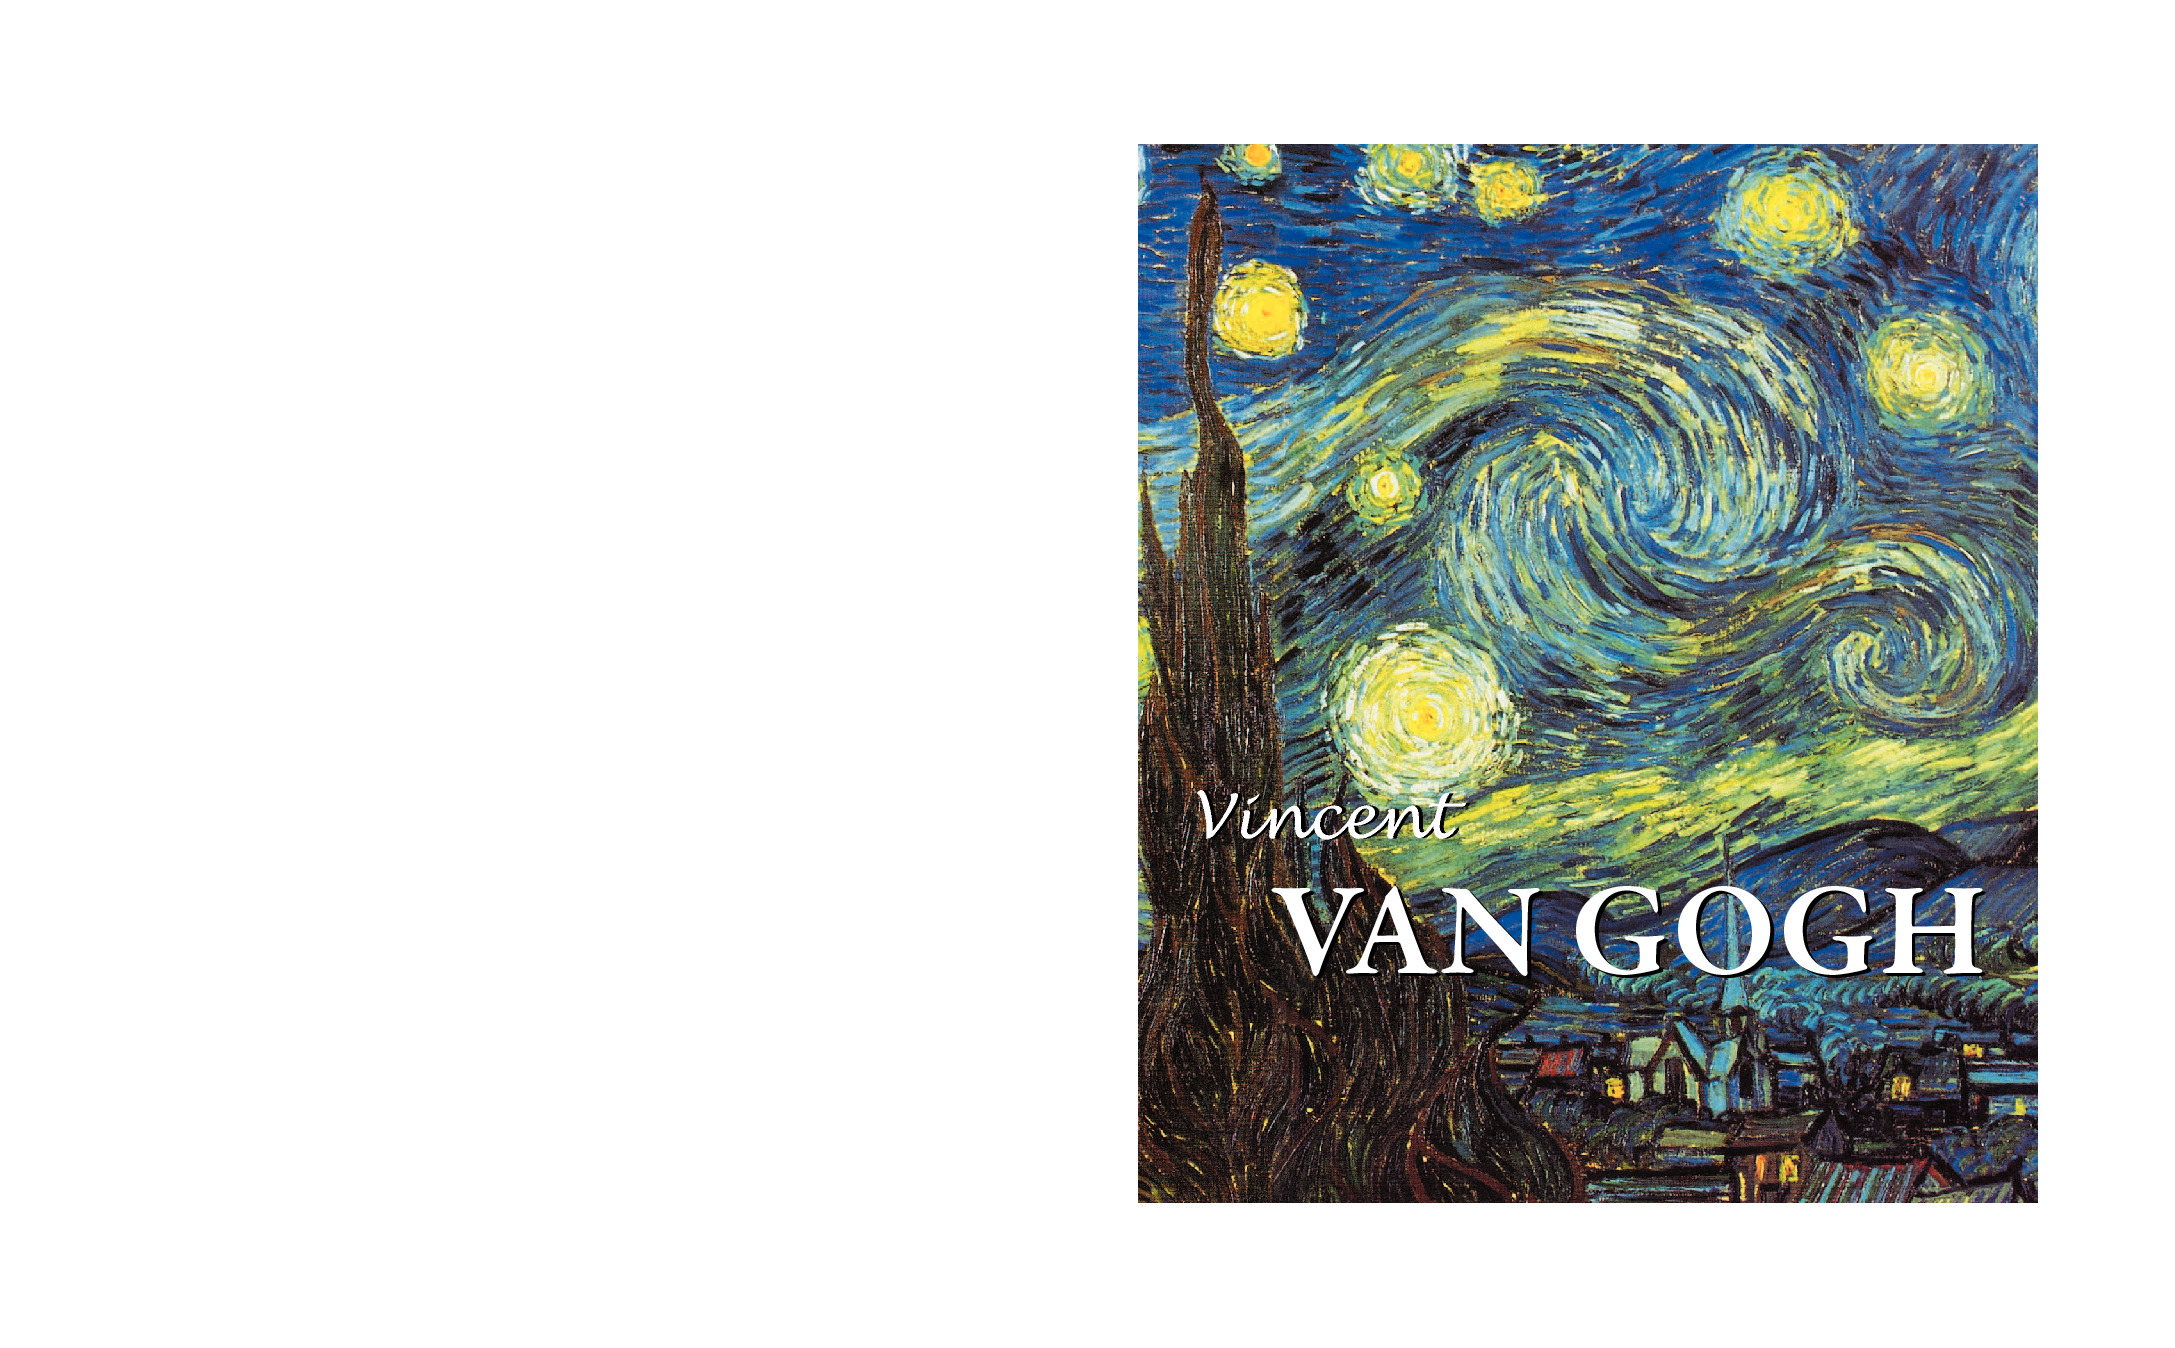 Vincent Van Gogh-Victorya Chales-Ingilizce-200s